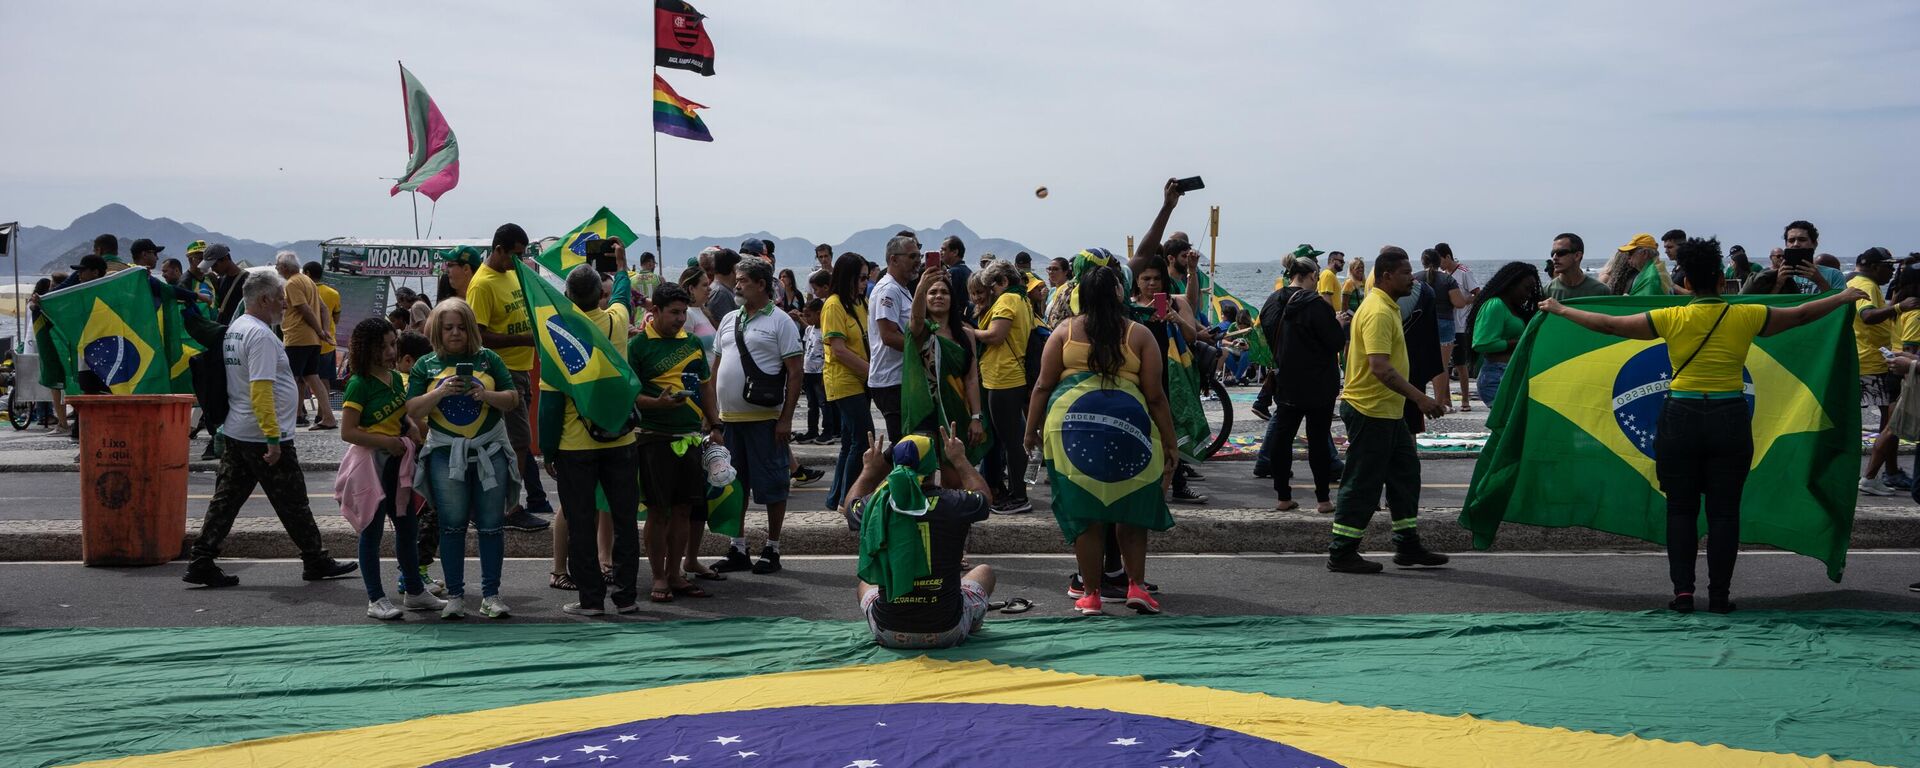 Público durante celebração do bicentenário da Independência do Brasil, em Copacabana, Rio de Janeiro, 7 de setembro de 2022 - Sputnik Brasil, 1920, 07.09.2022